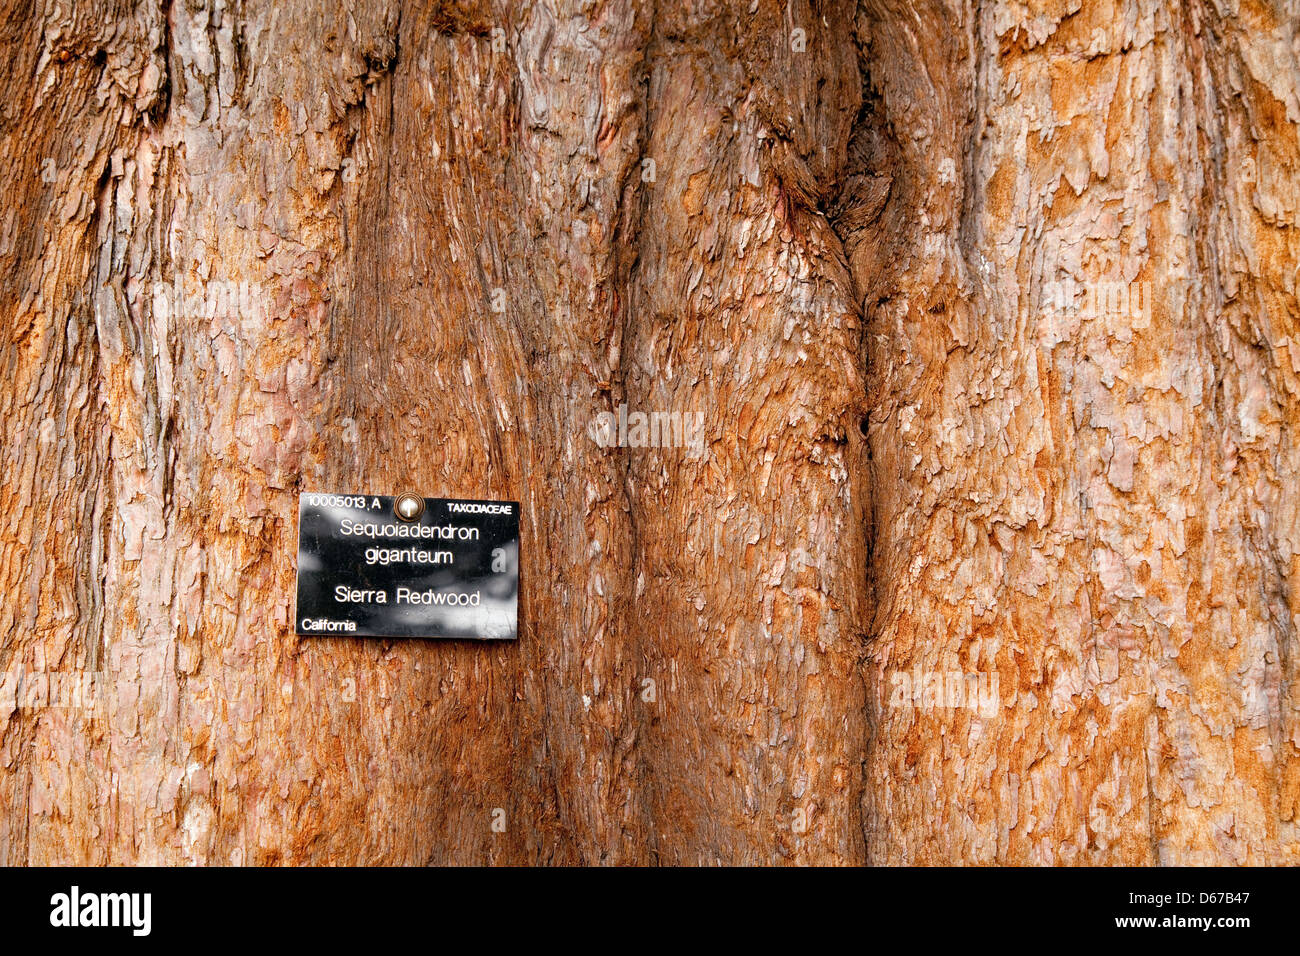 Nahaufnahme des Rumpfes und der Rinde von einem Mammutbaum Sierra Redwood-Baum, Cambridge Botanischer Garten, UK Stockfoto